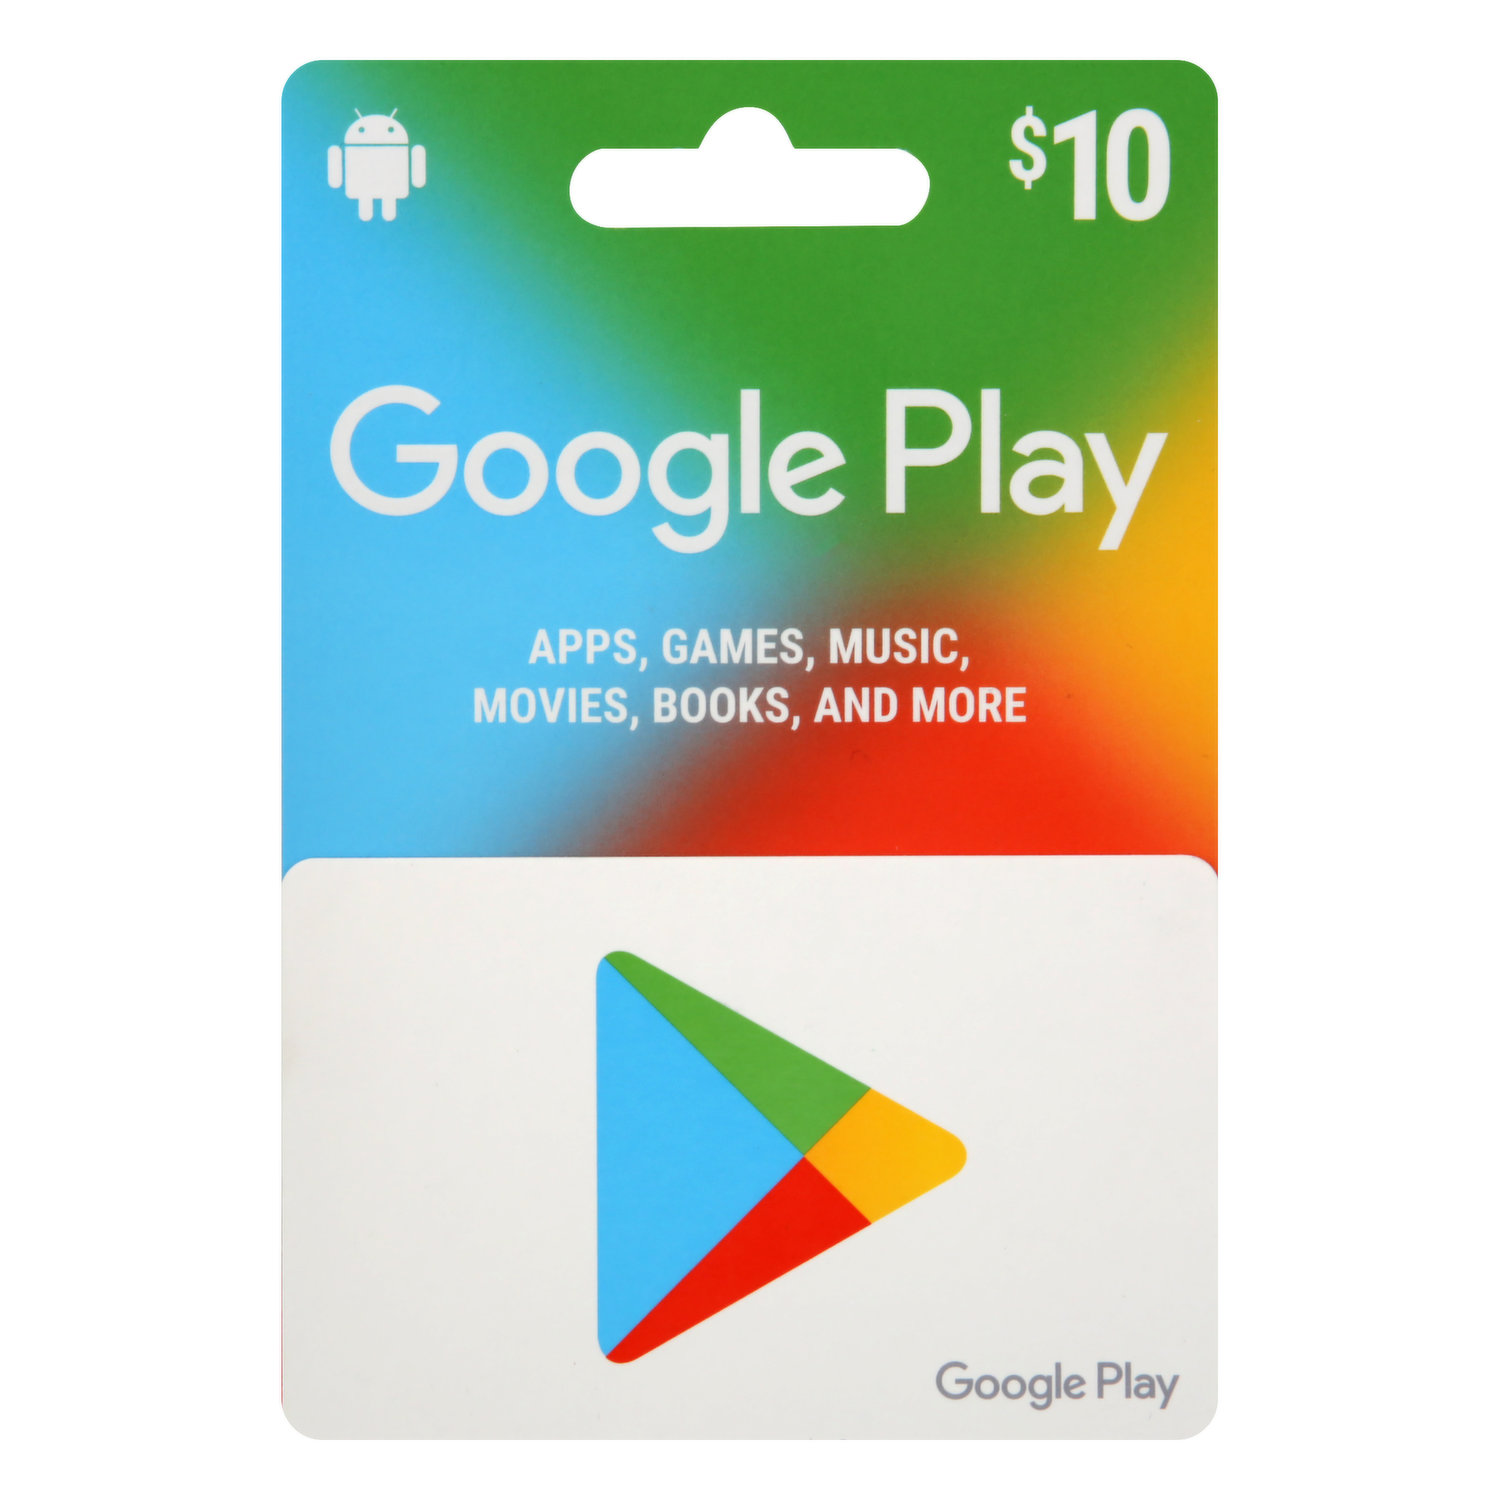 Gift card danificado - Comunidade Google Play